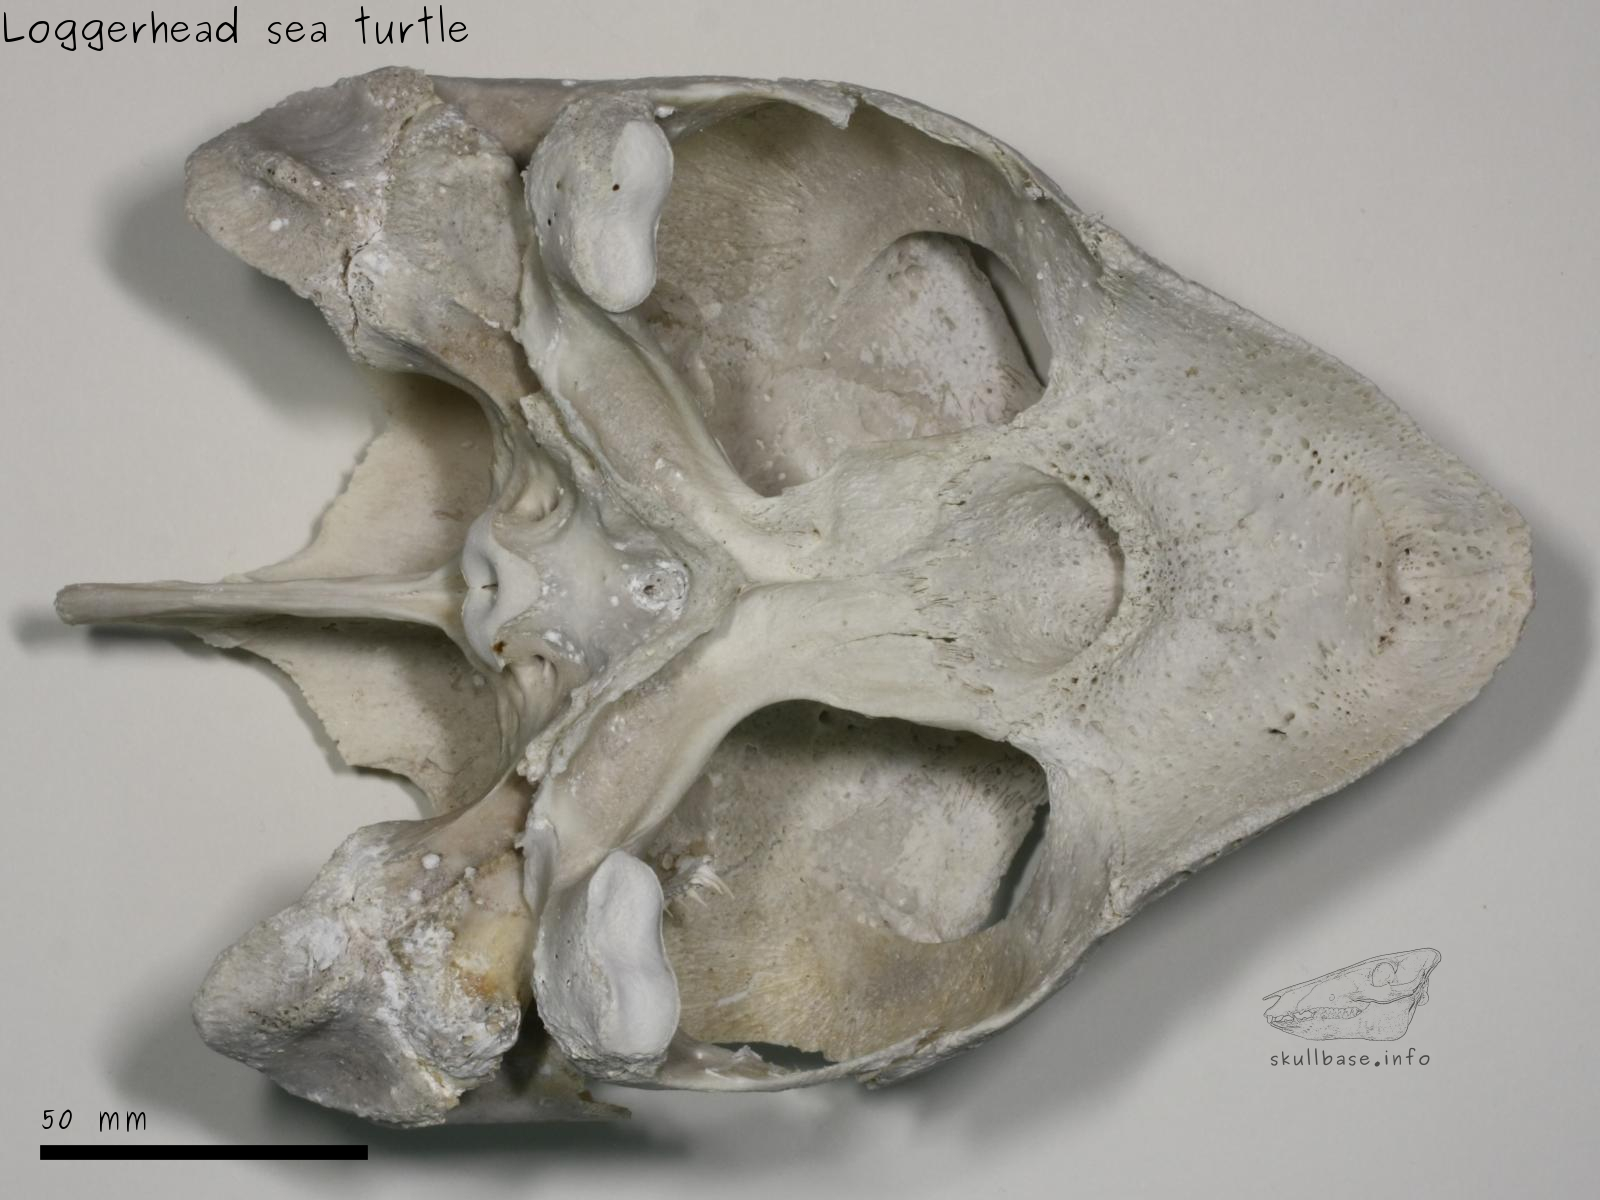 Loggerhead sea turtle (Caretta caretta) skull ventral view